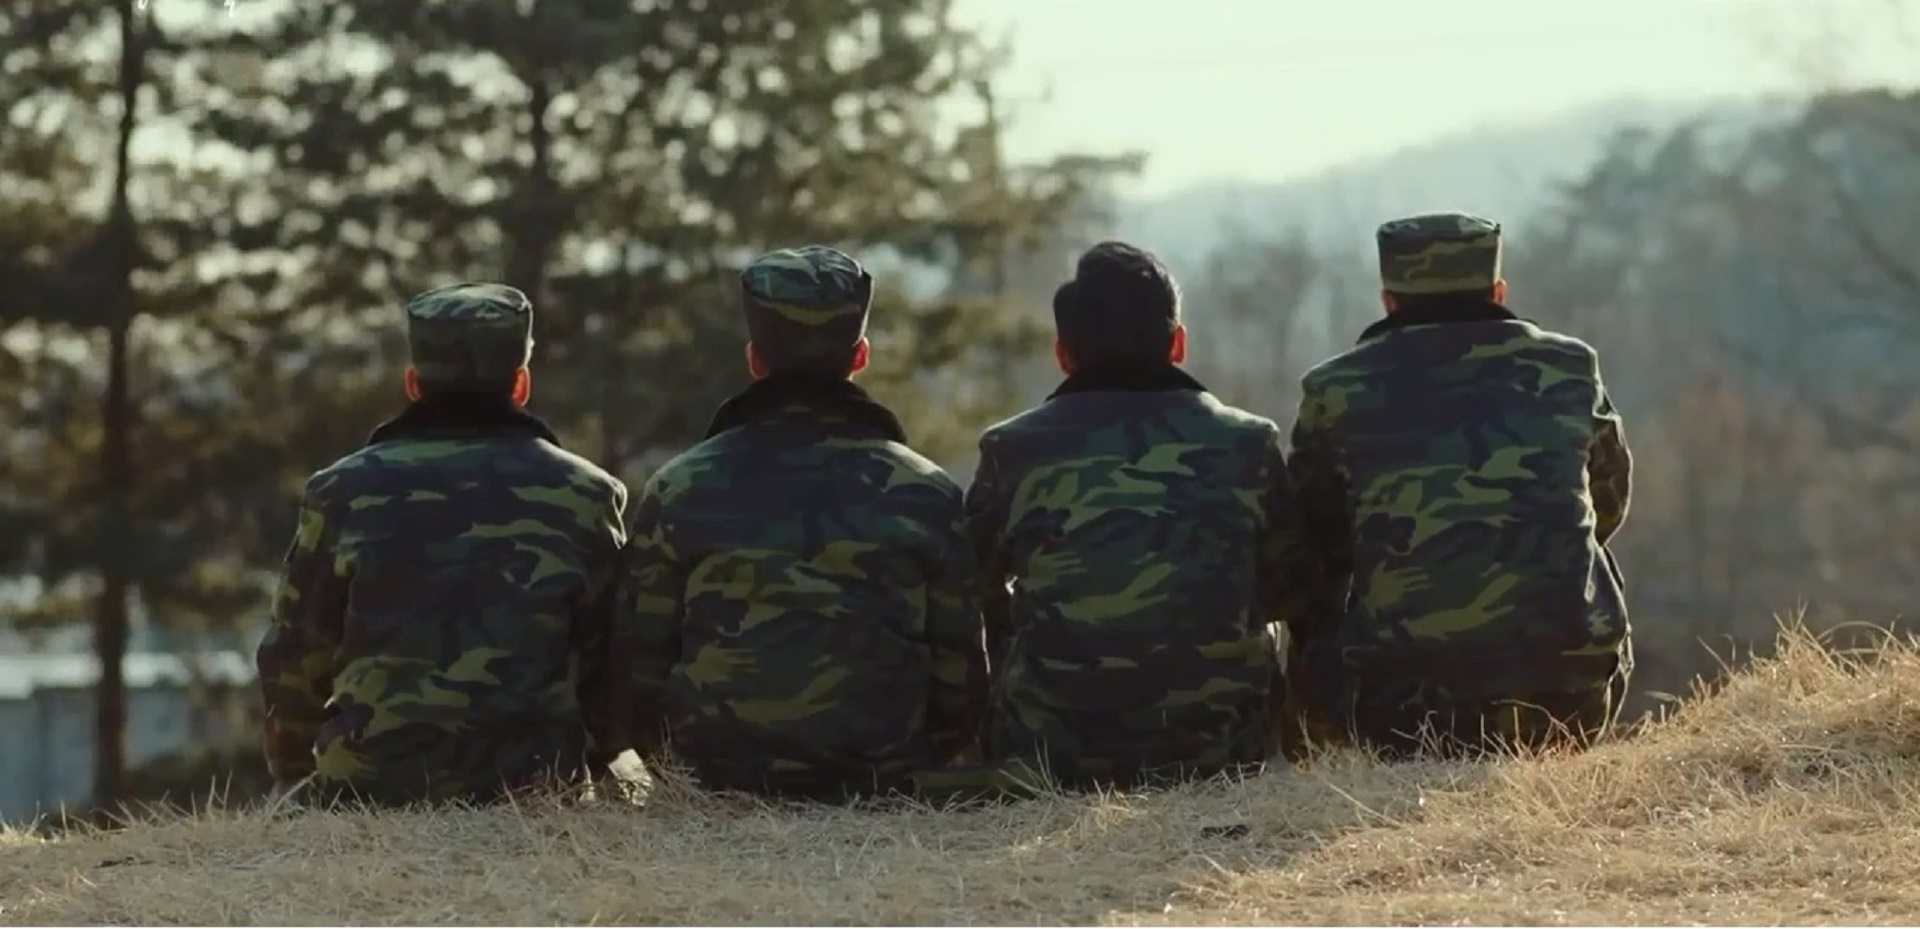 سربازان کره شمالی در حال نگاه کردن به کره جنوبی در سریال سقوط بر روی تو